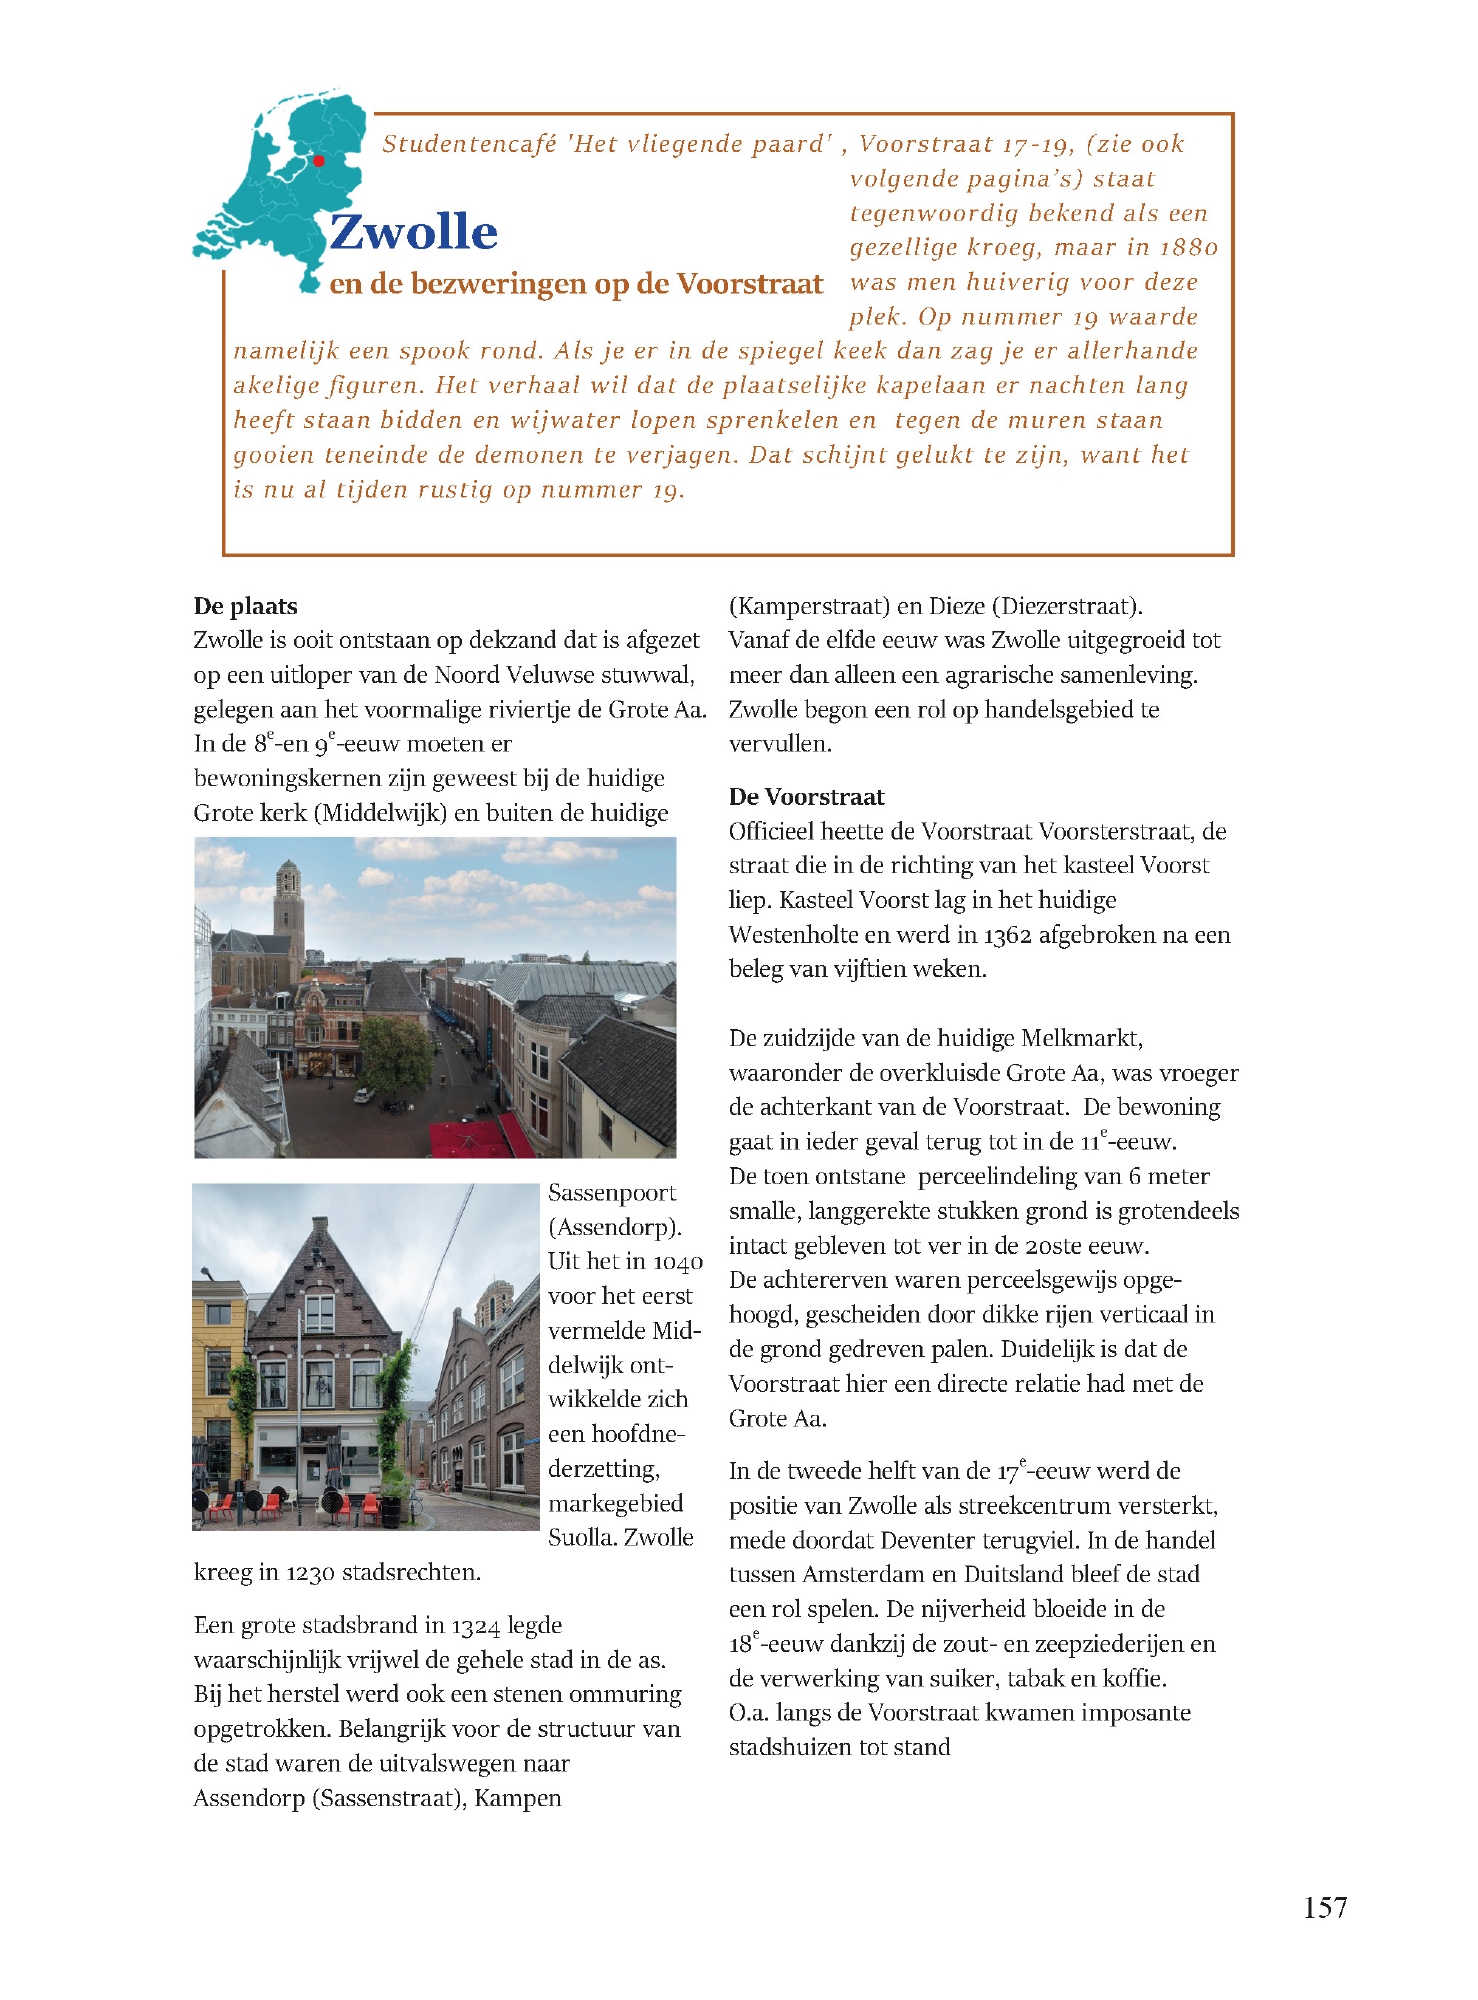 De geschiedenis van de voorstraat in Nederland Deel 1